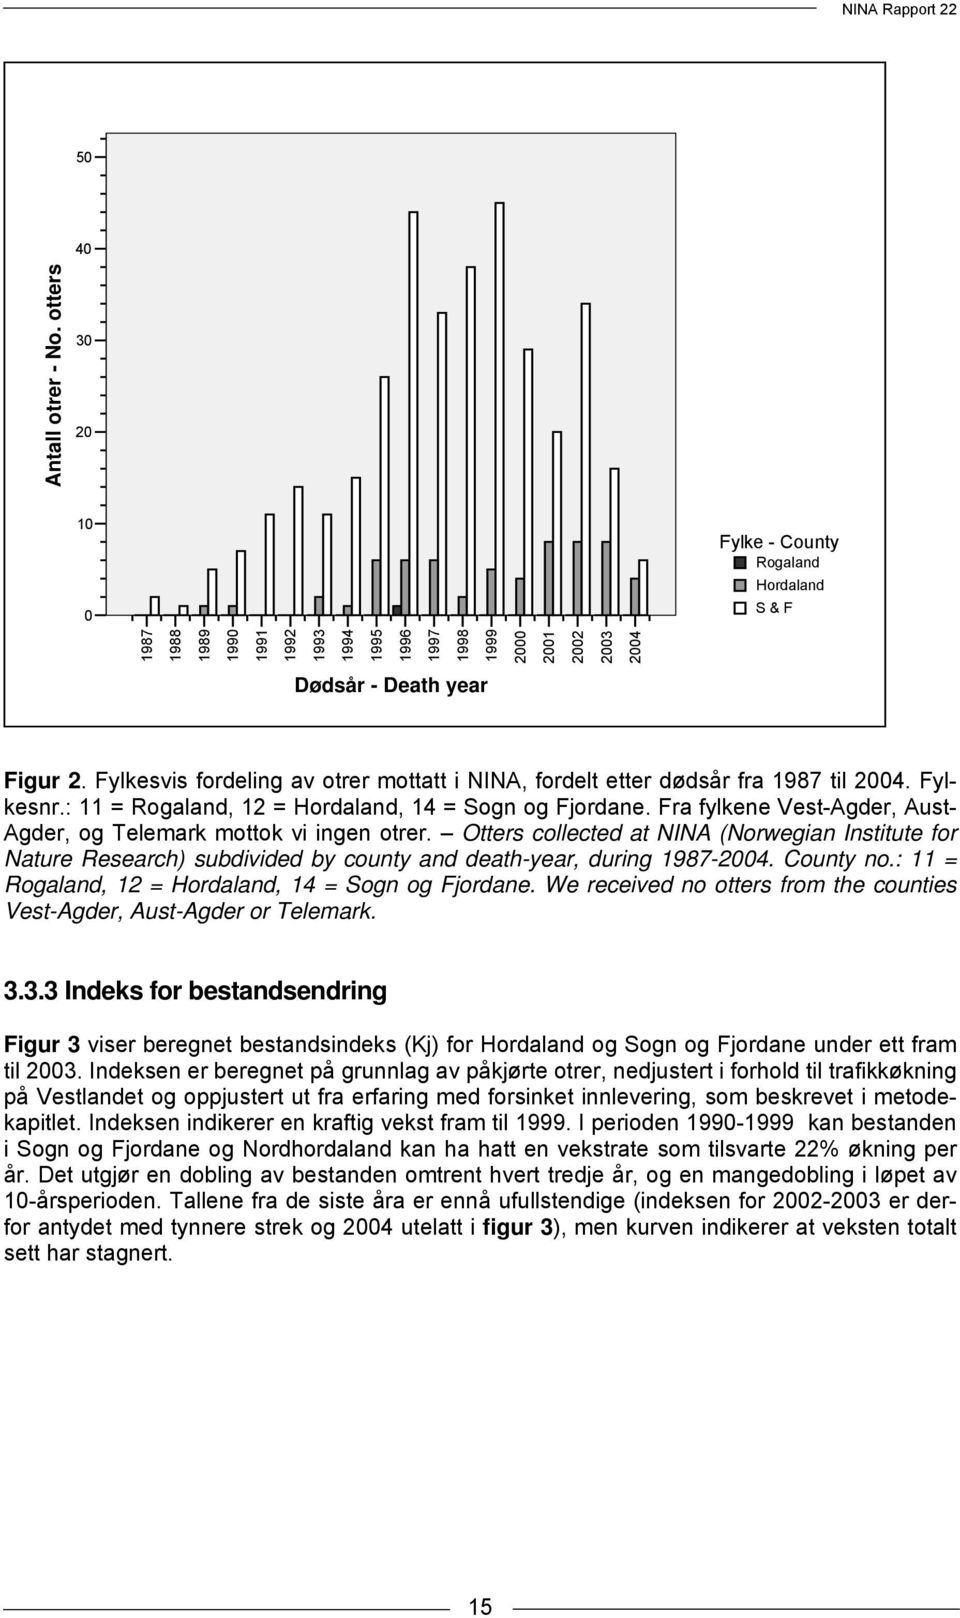 Fylkesvis fordeling av otrer mottatt i NINA, fordelt etter dødsår fra 1987 til 2004. Fylkesnr.: 11 = Rogaland, 12 = Hordaland, 14 = Sogn og Fjordane.